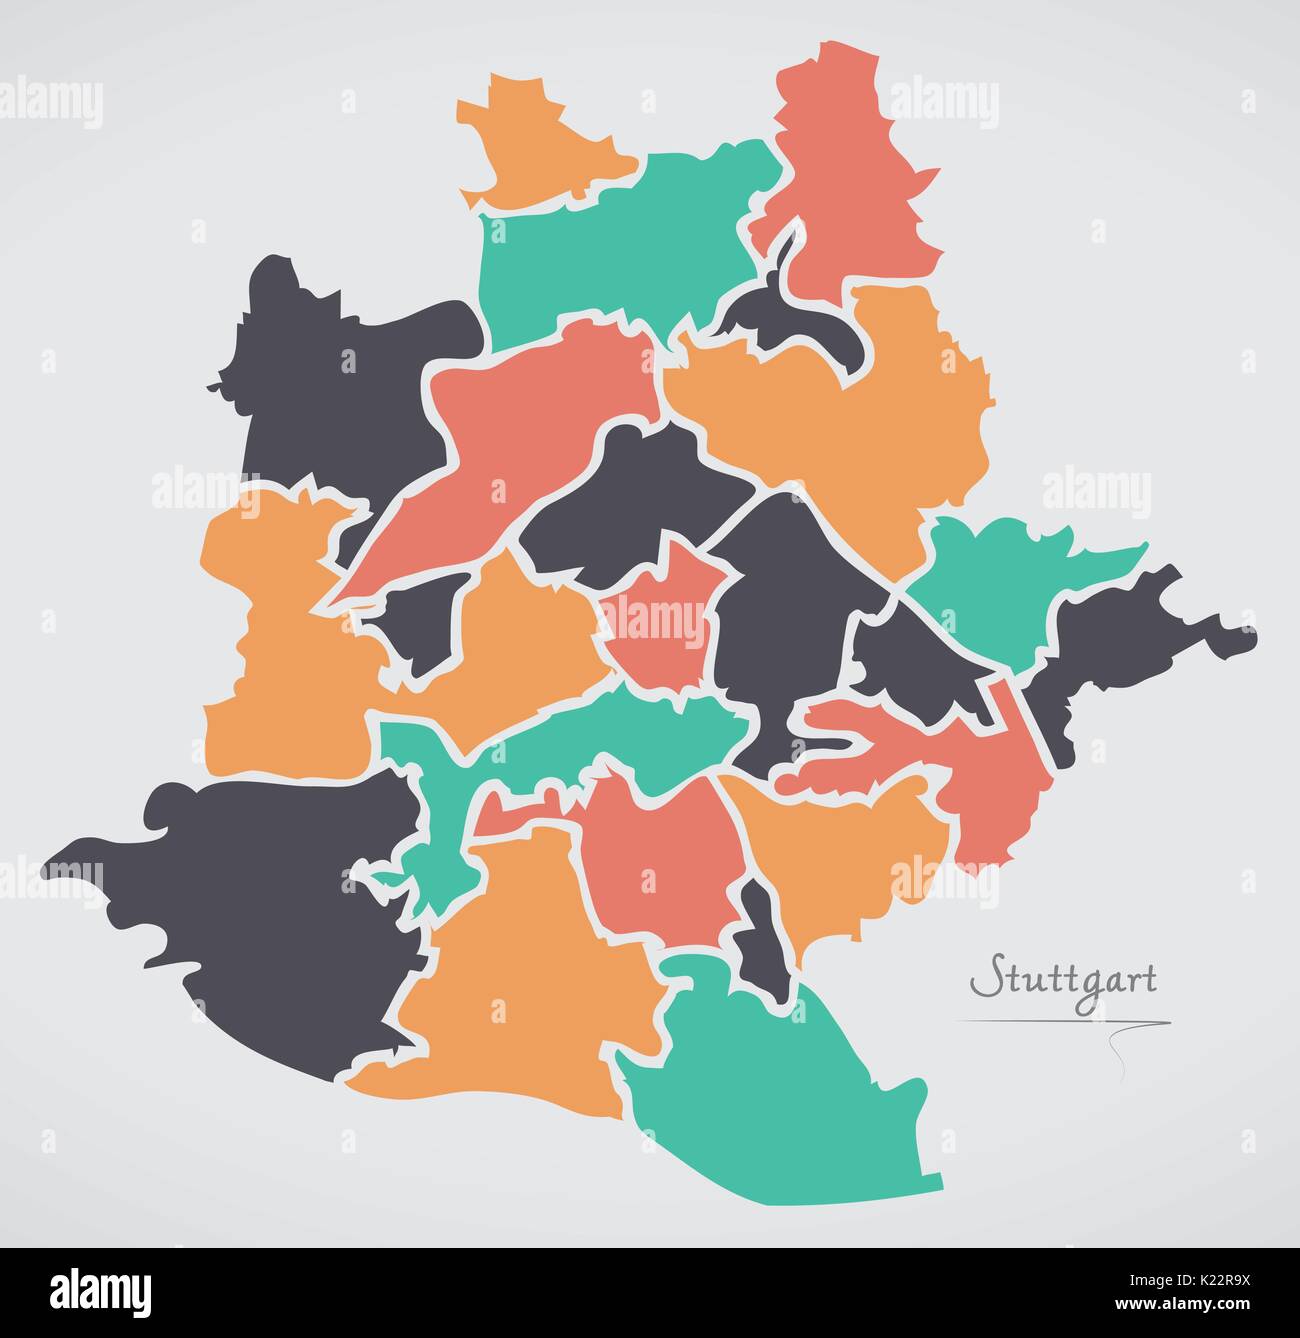 Stuttgart Karte mit Bezirken und moderne runde Formen Stock Vektor